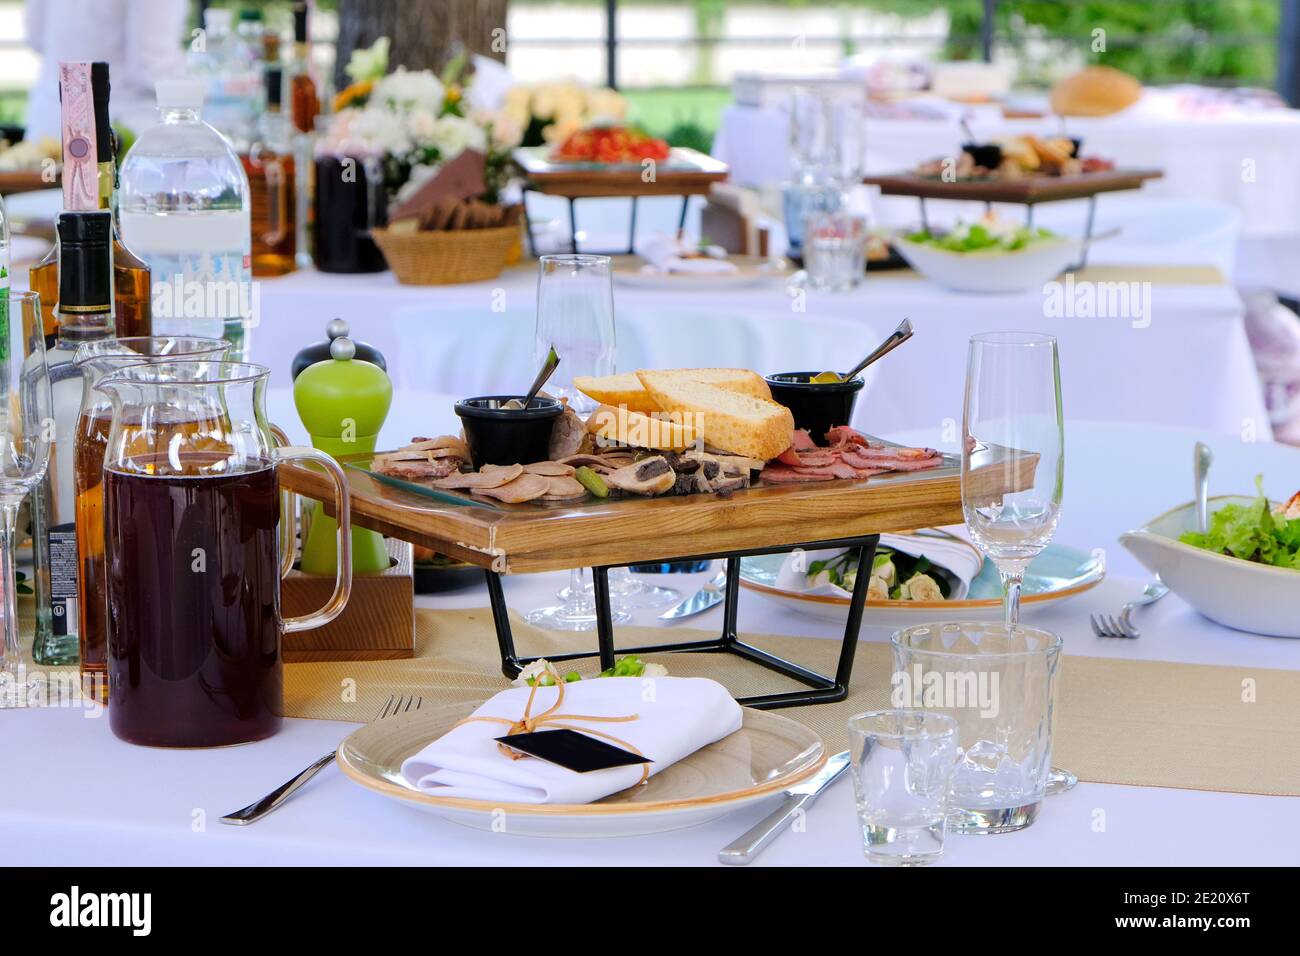 Köstliche Gerichte auf Holztabletts und Getränke auf einem Banketttisch in einem Luxusrestaurant. Stockfoto